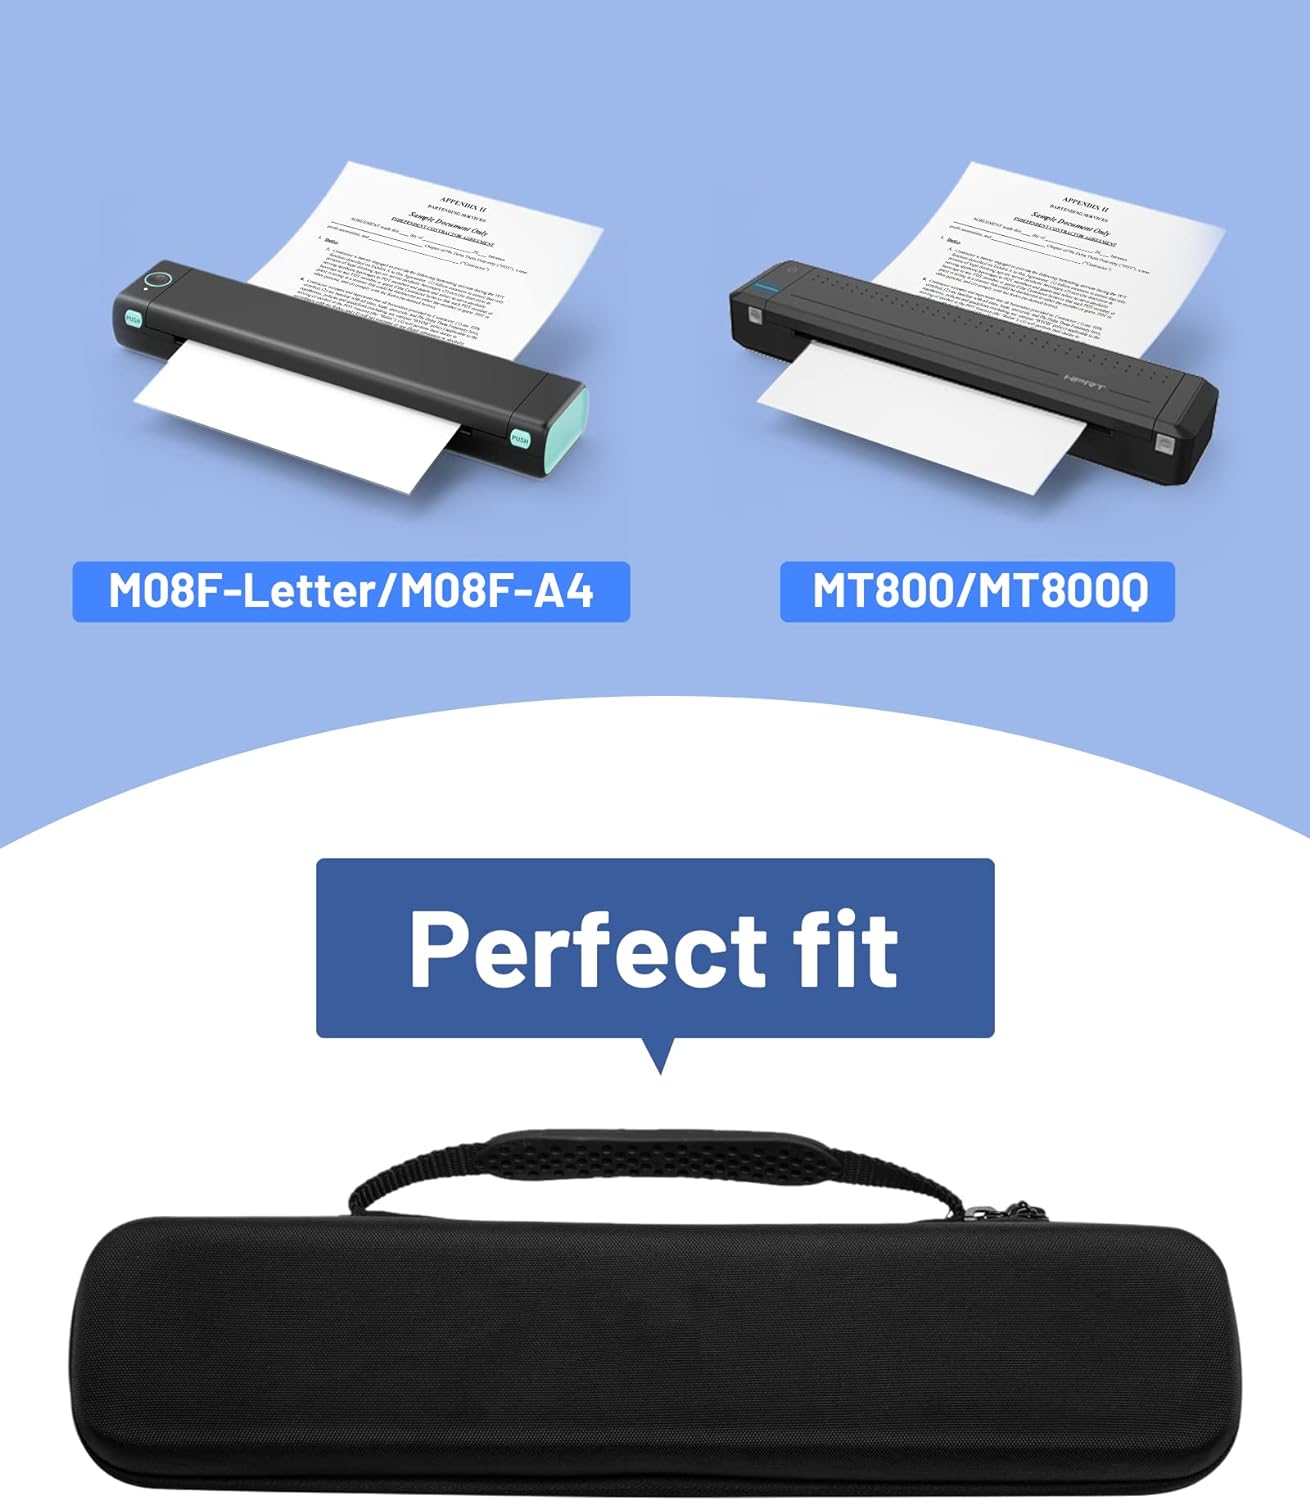 Itari EVA opbergtas voor draagbare printer M08F - Draagtas is compatibel met phomemo Colorwing M08F en Hprt MT800/MT800Q draagbare printers voor draadloos reizen, compact, lichtgewicht en schokbestendig